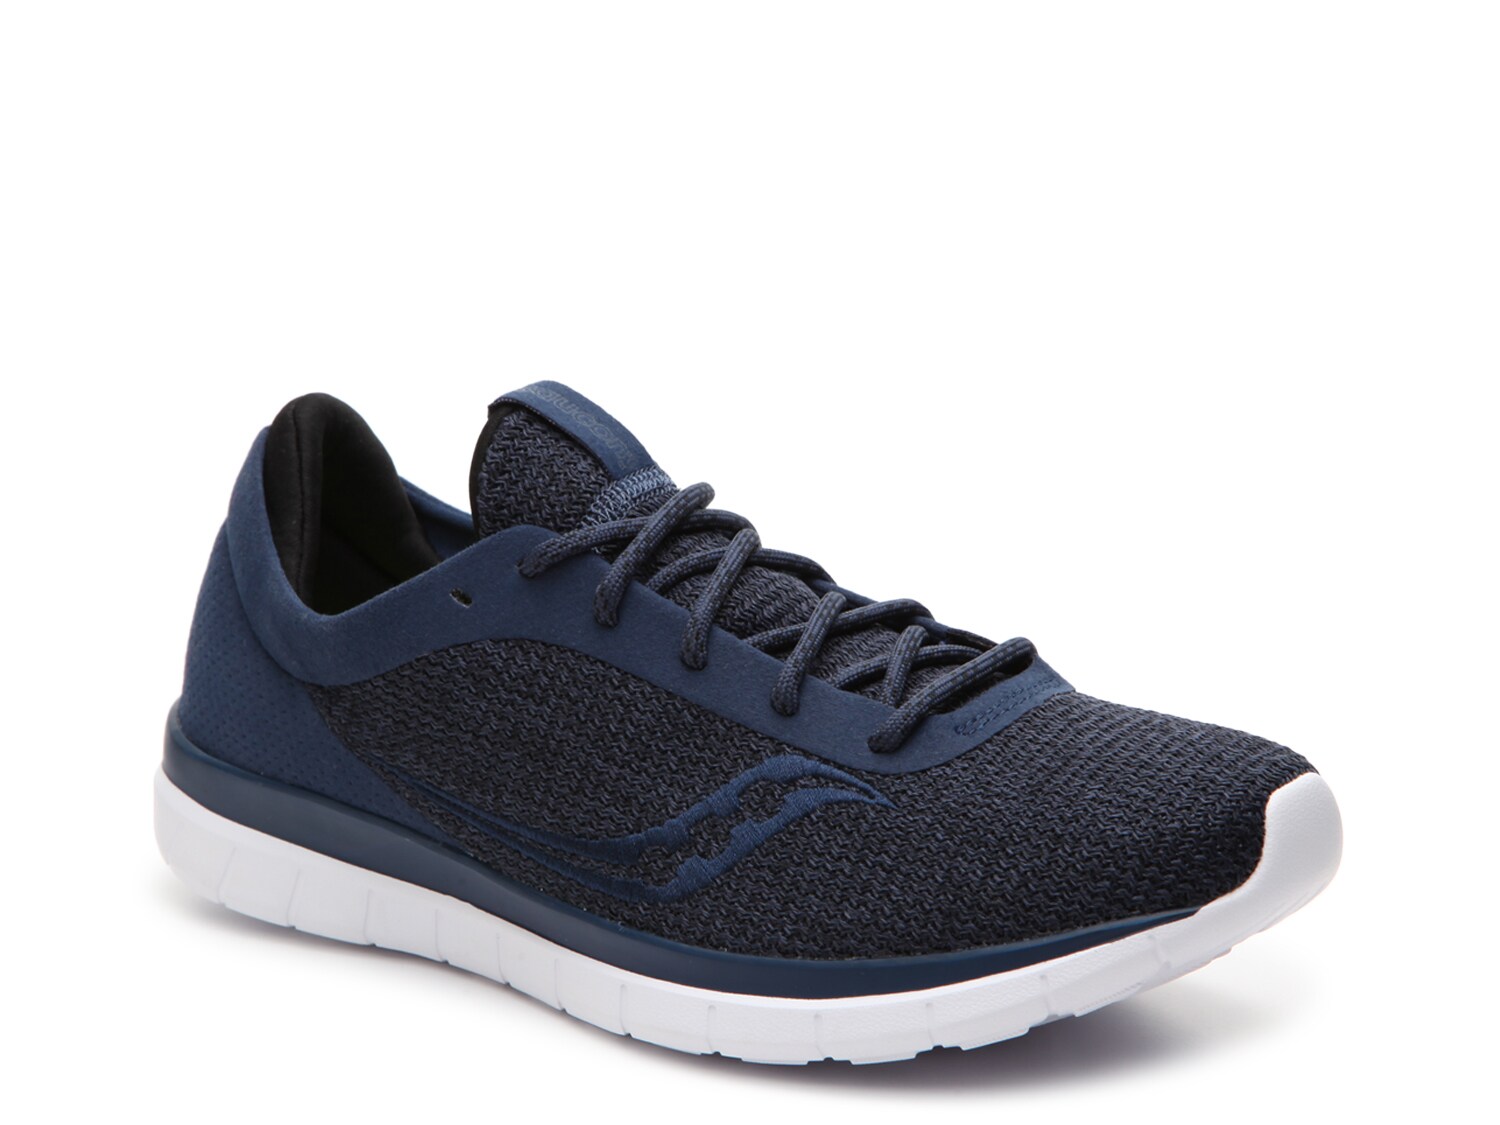 Saucony Men's Liteform Escape Running Shoes Size US 9 S40018-1 Black\Charcoal 